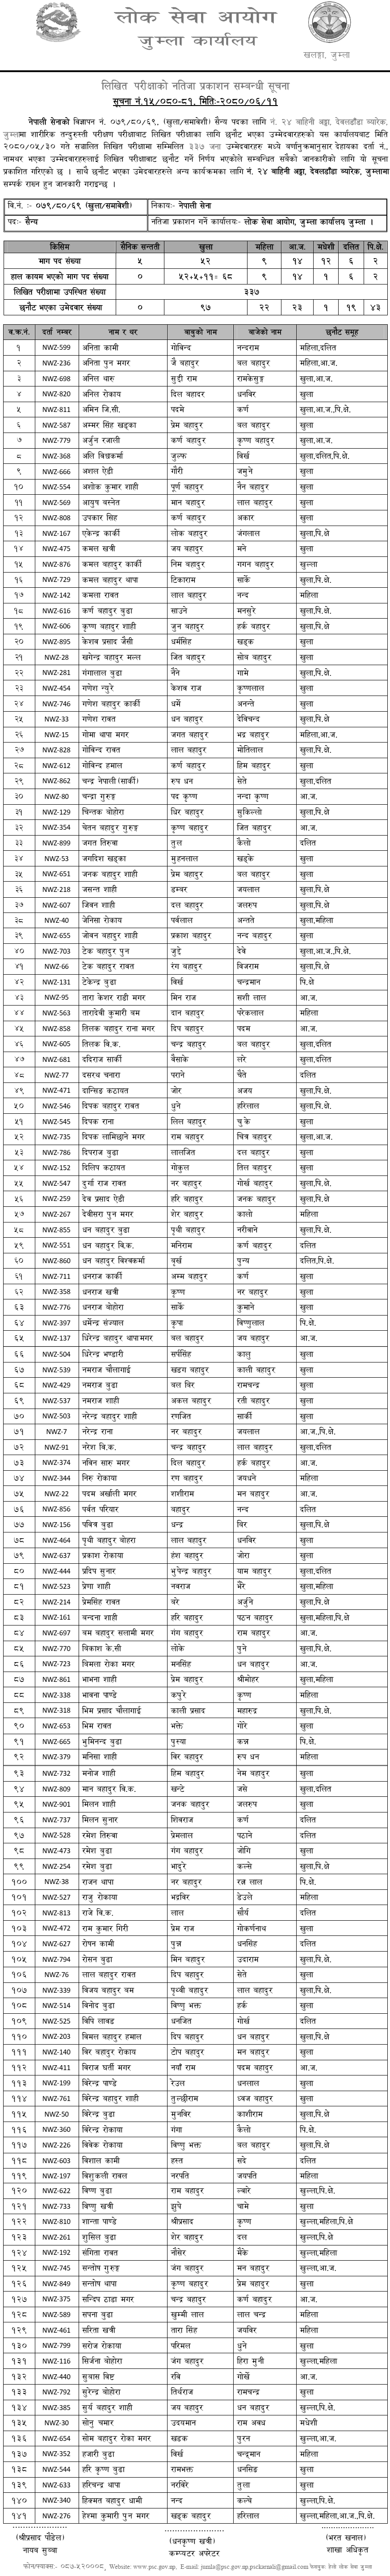 Nepal Army Sainya Post Jumla Written Exam Result 2080